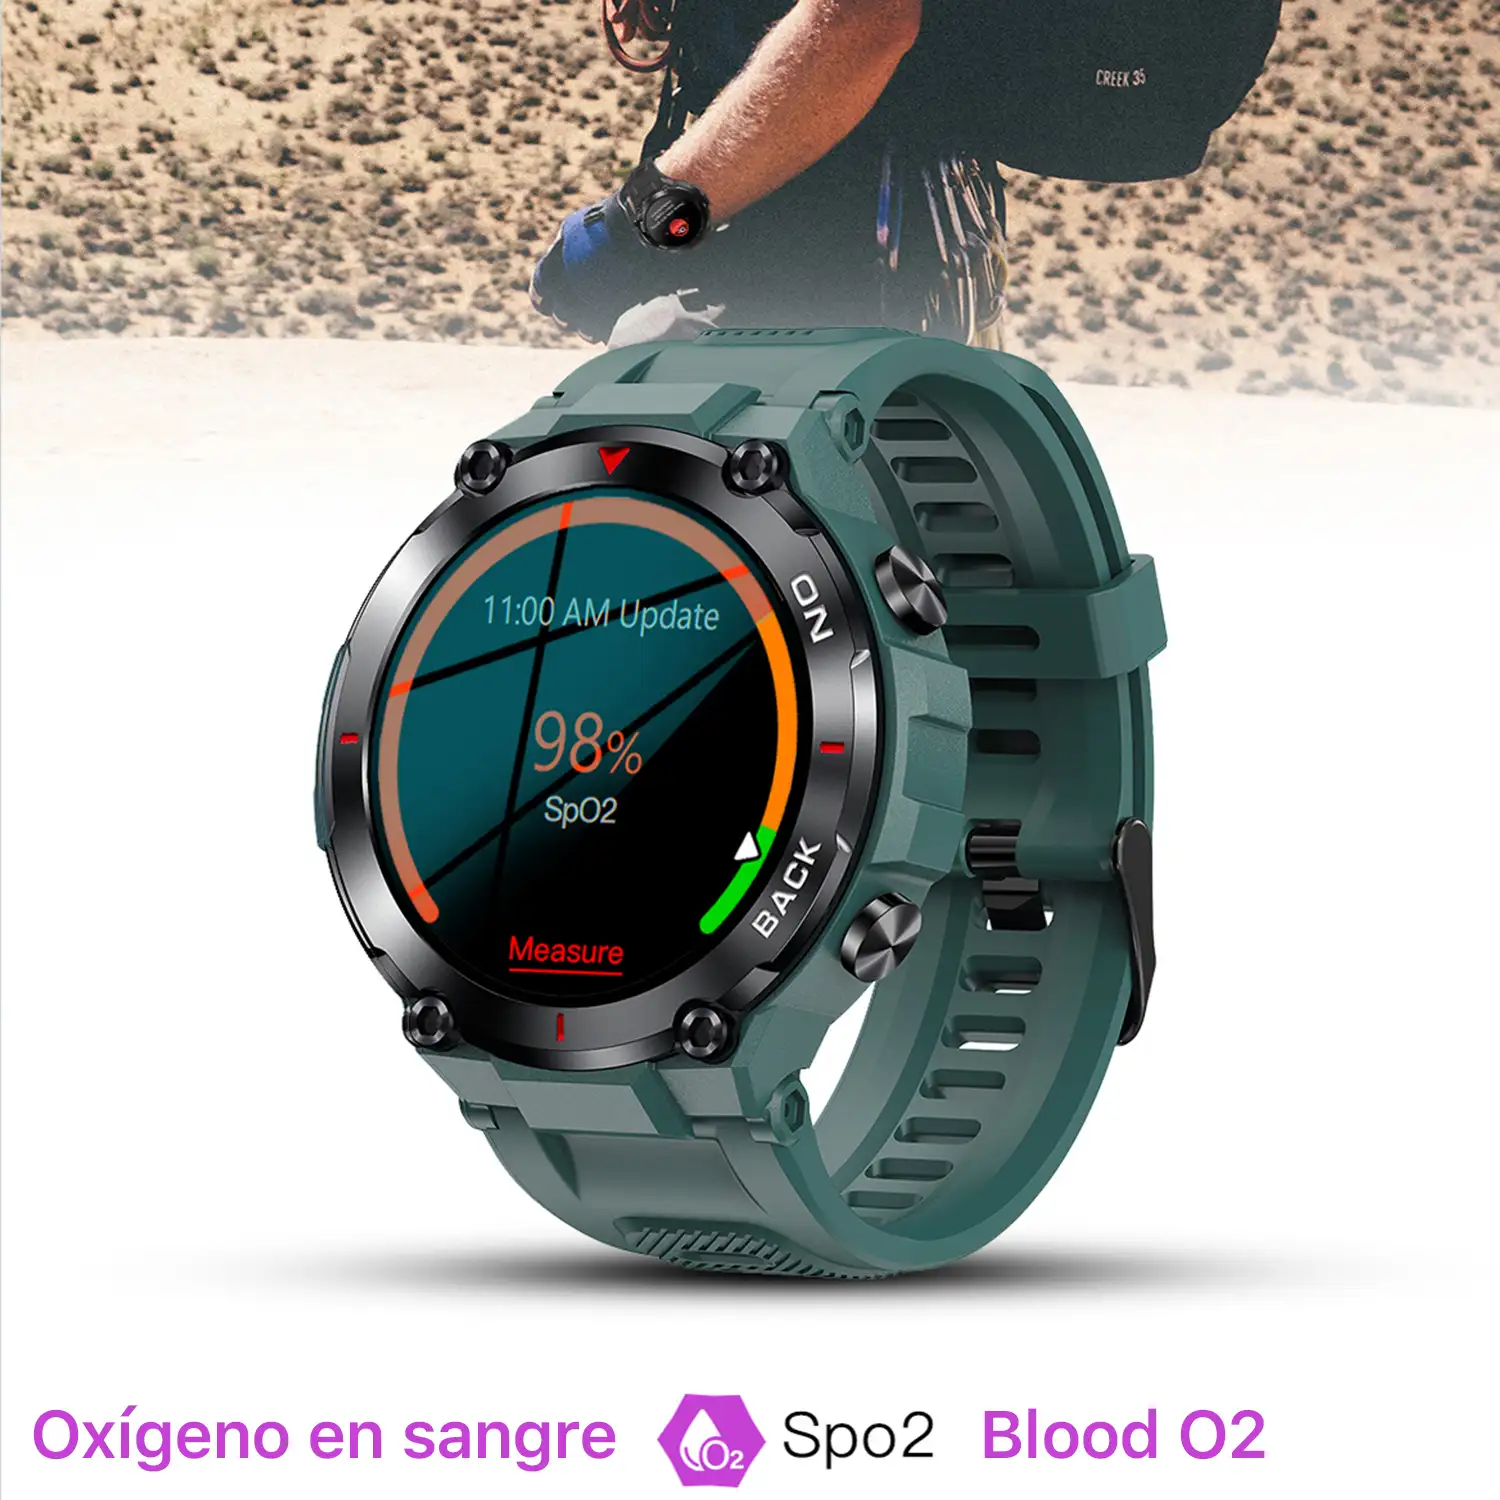 Smartwatch batería de de larga duración. Monitor cardiaco y de O2. Notificaciones de